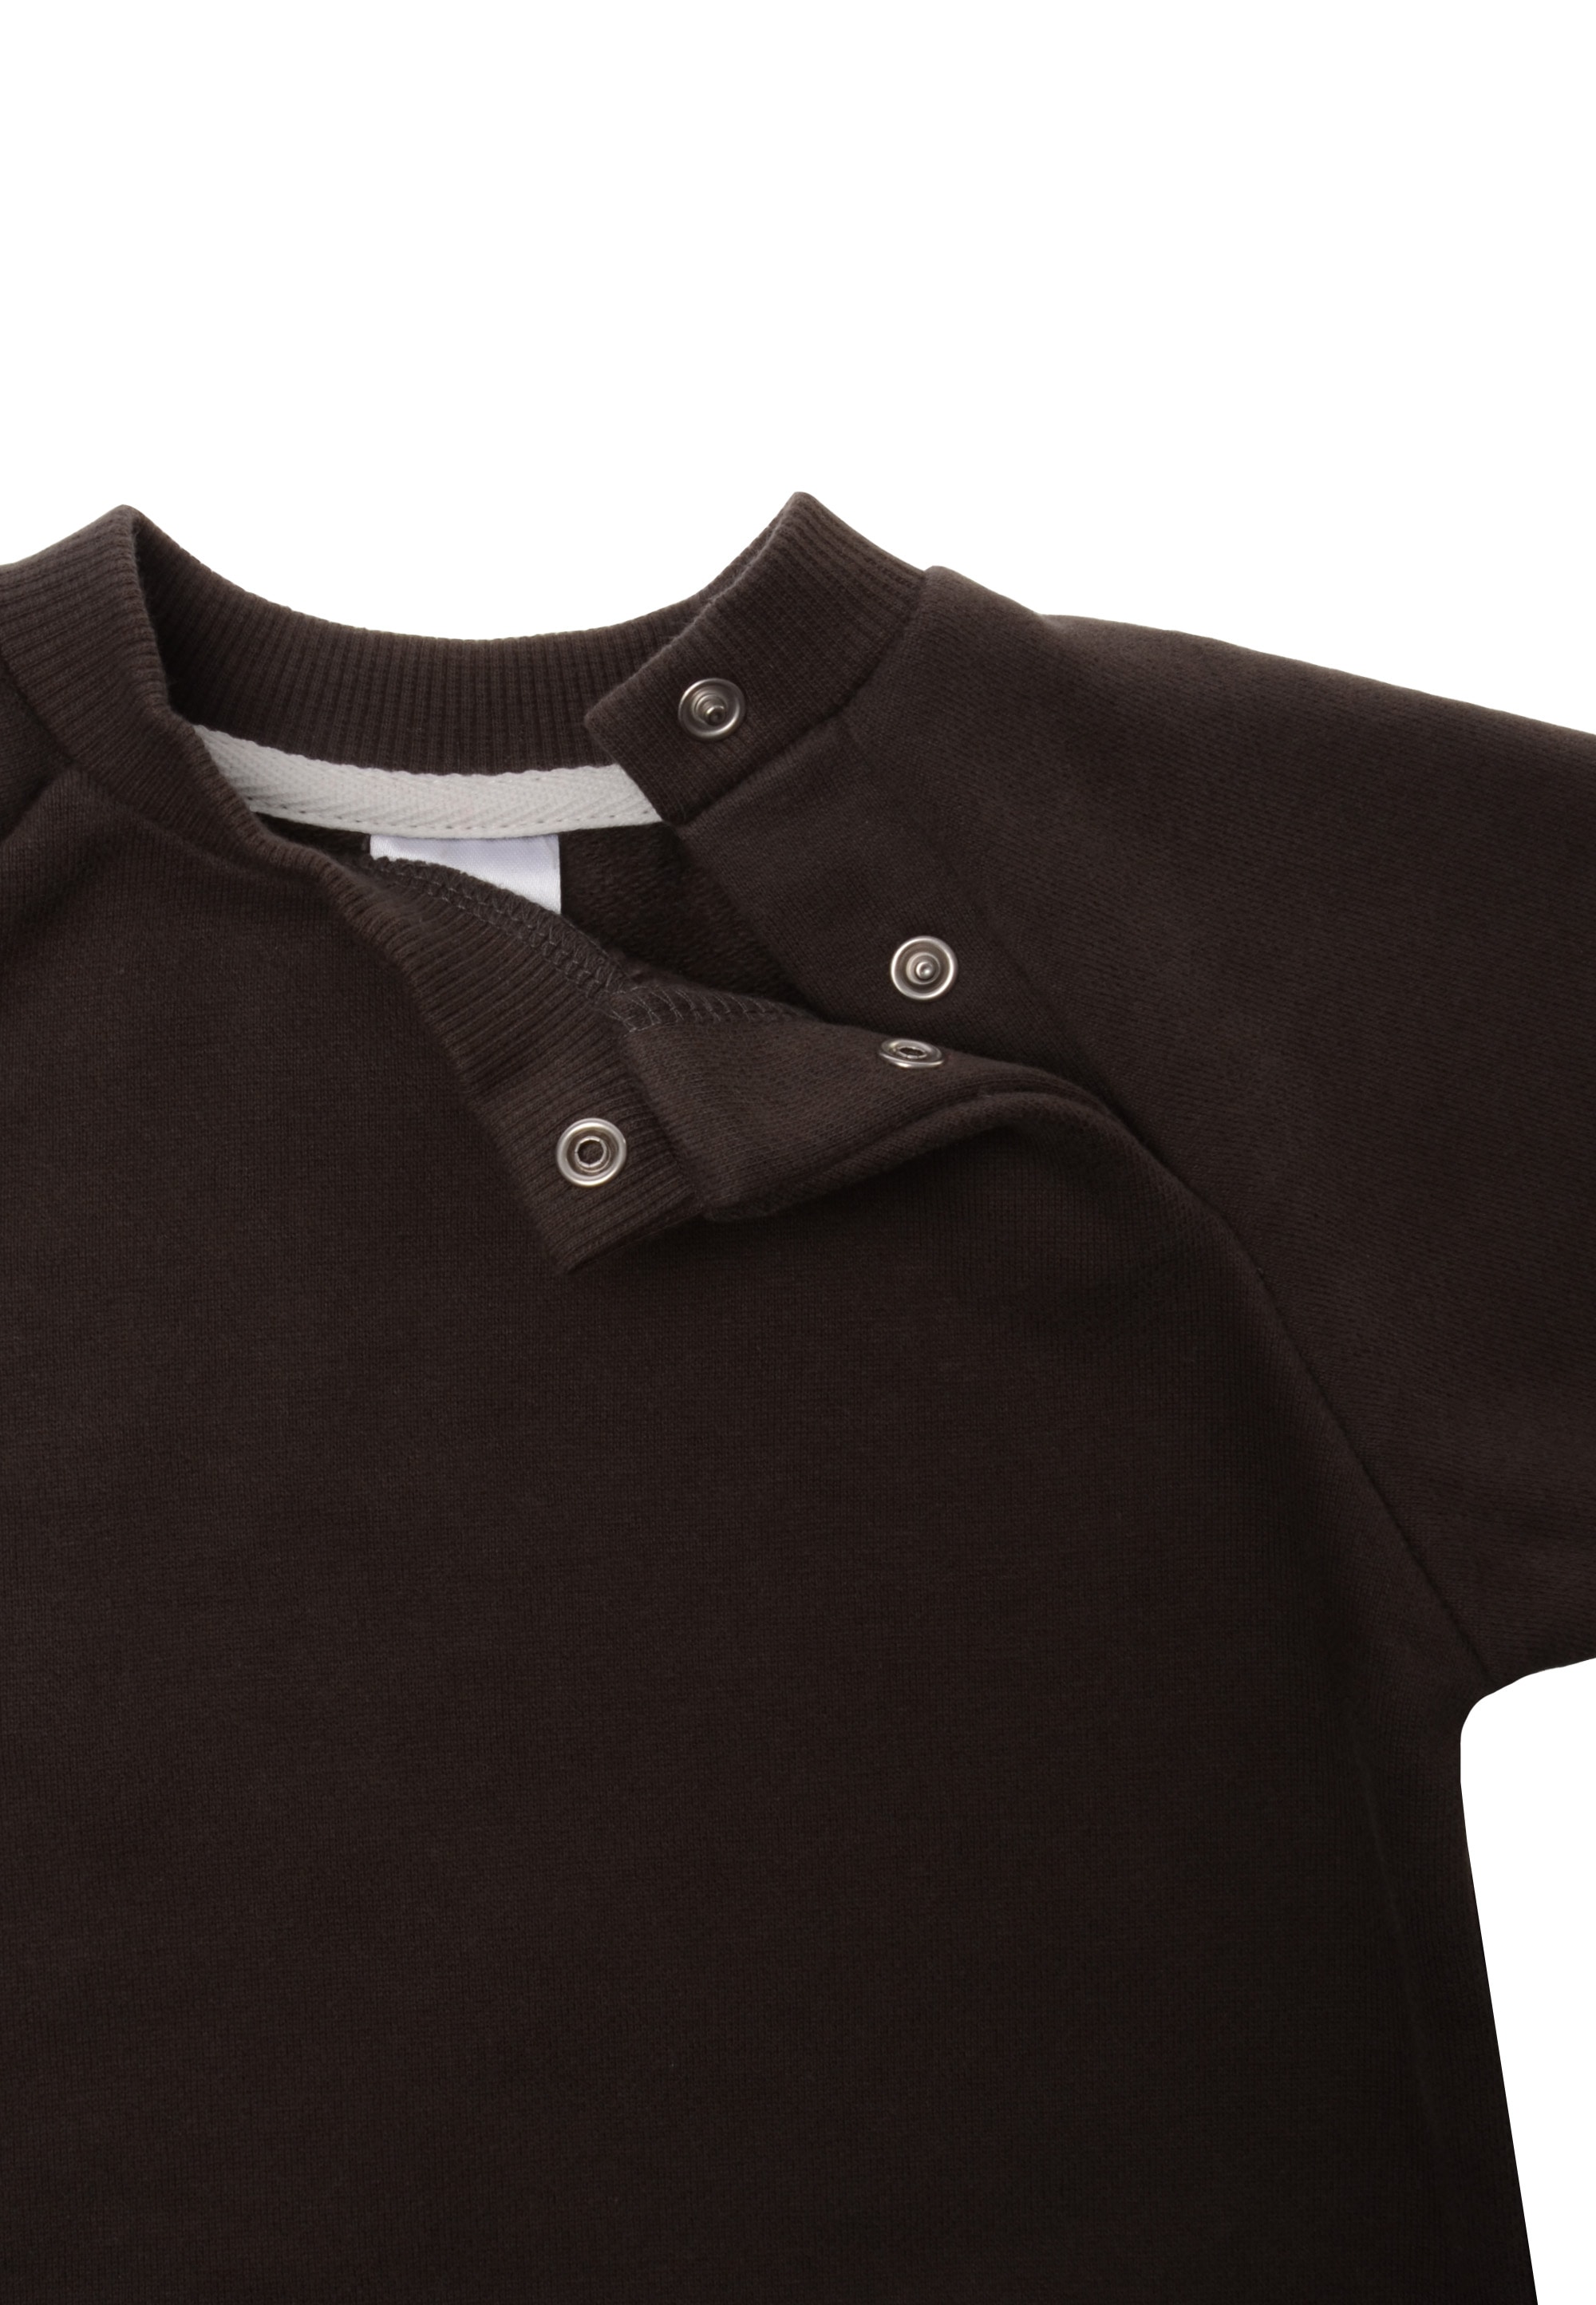 Friday Material Baumwolle Sweatshirt, Liliput aus | BAUR Black weichem mit